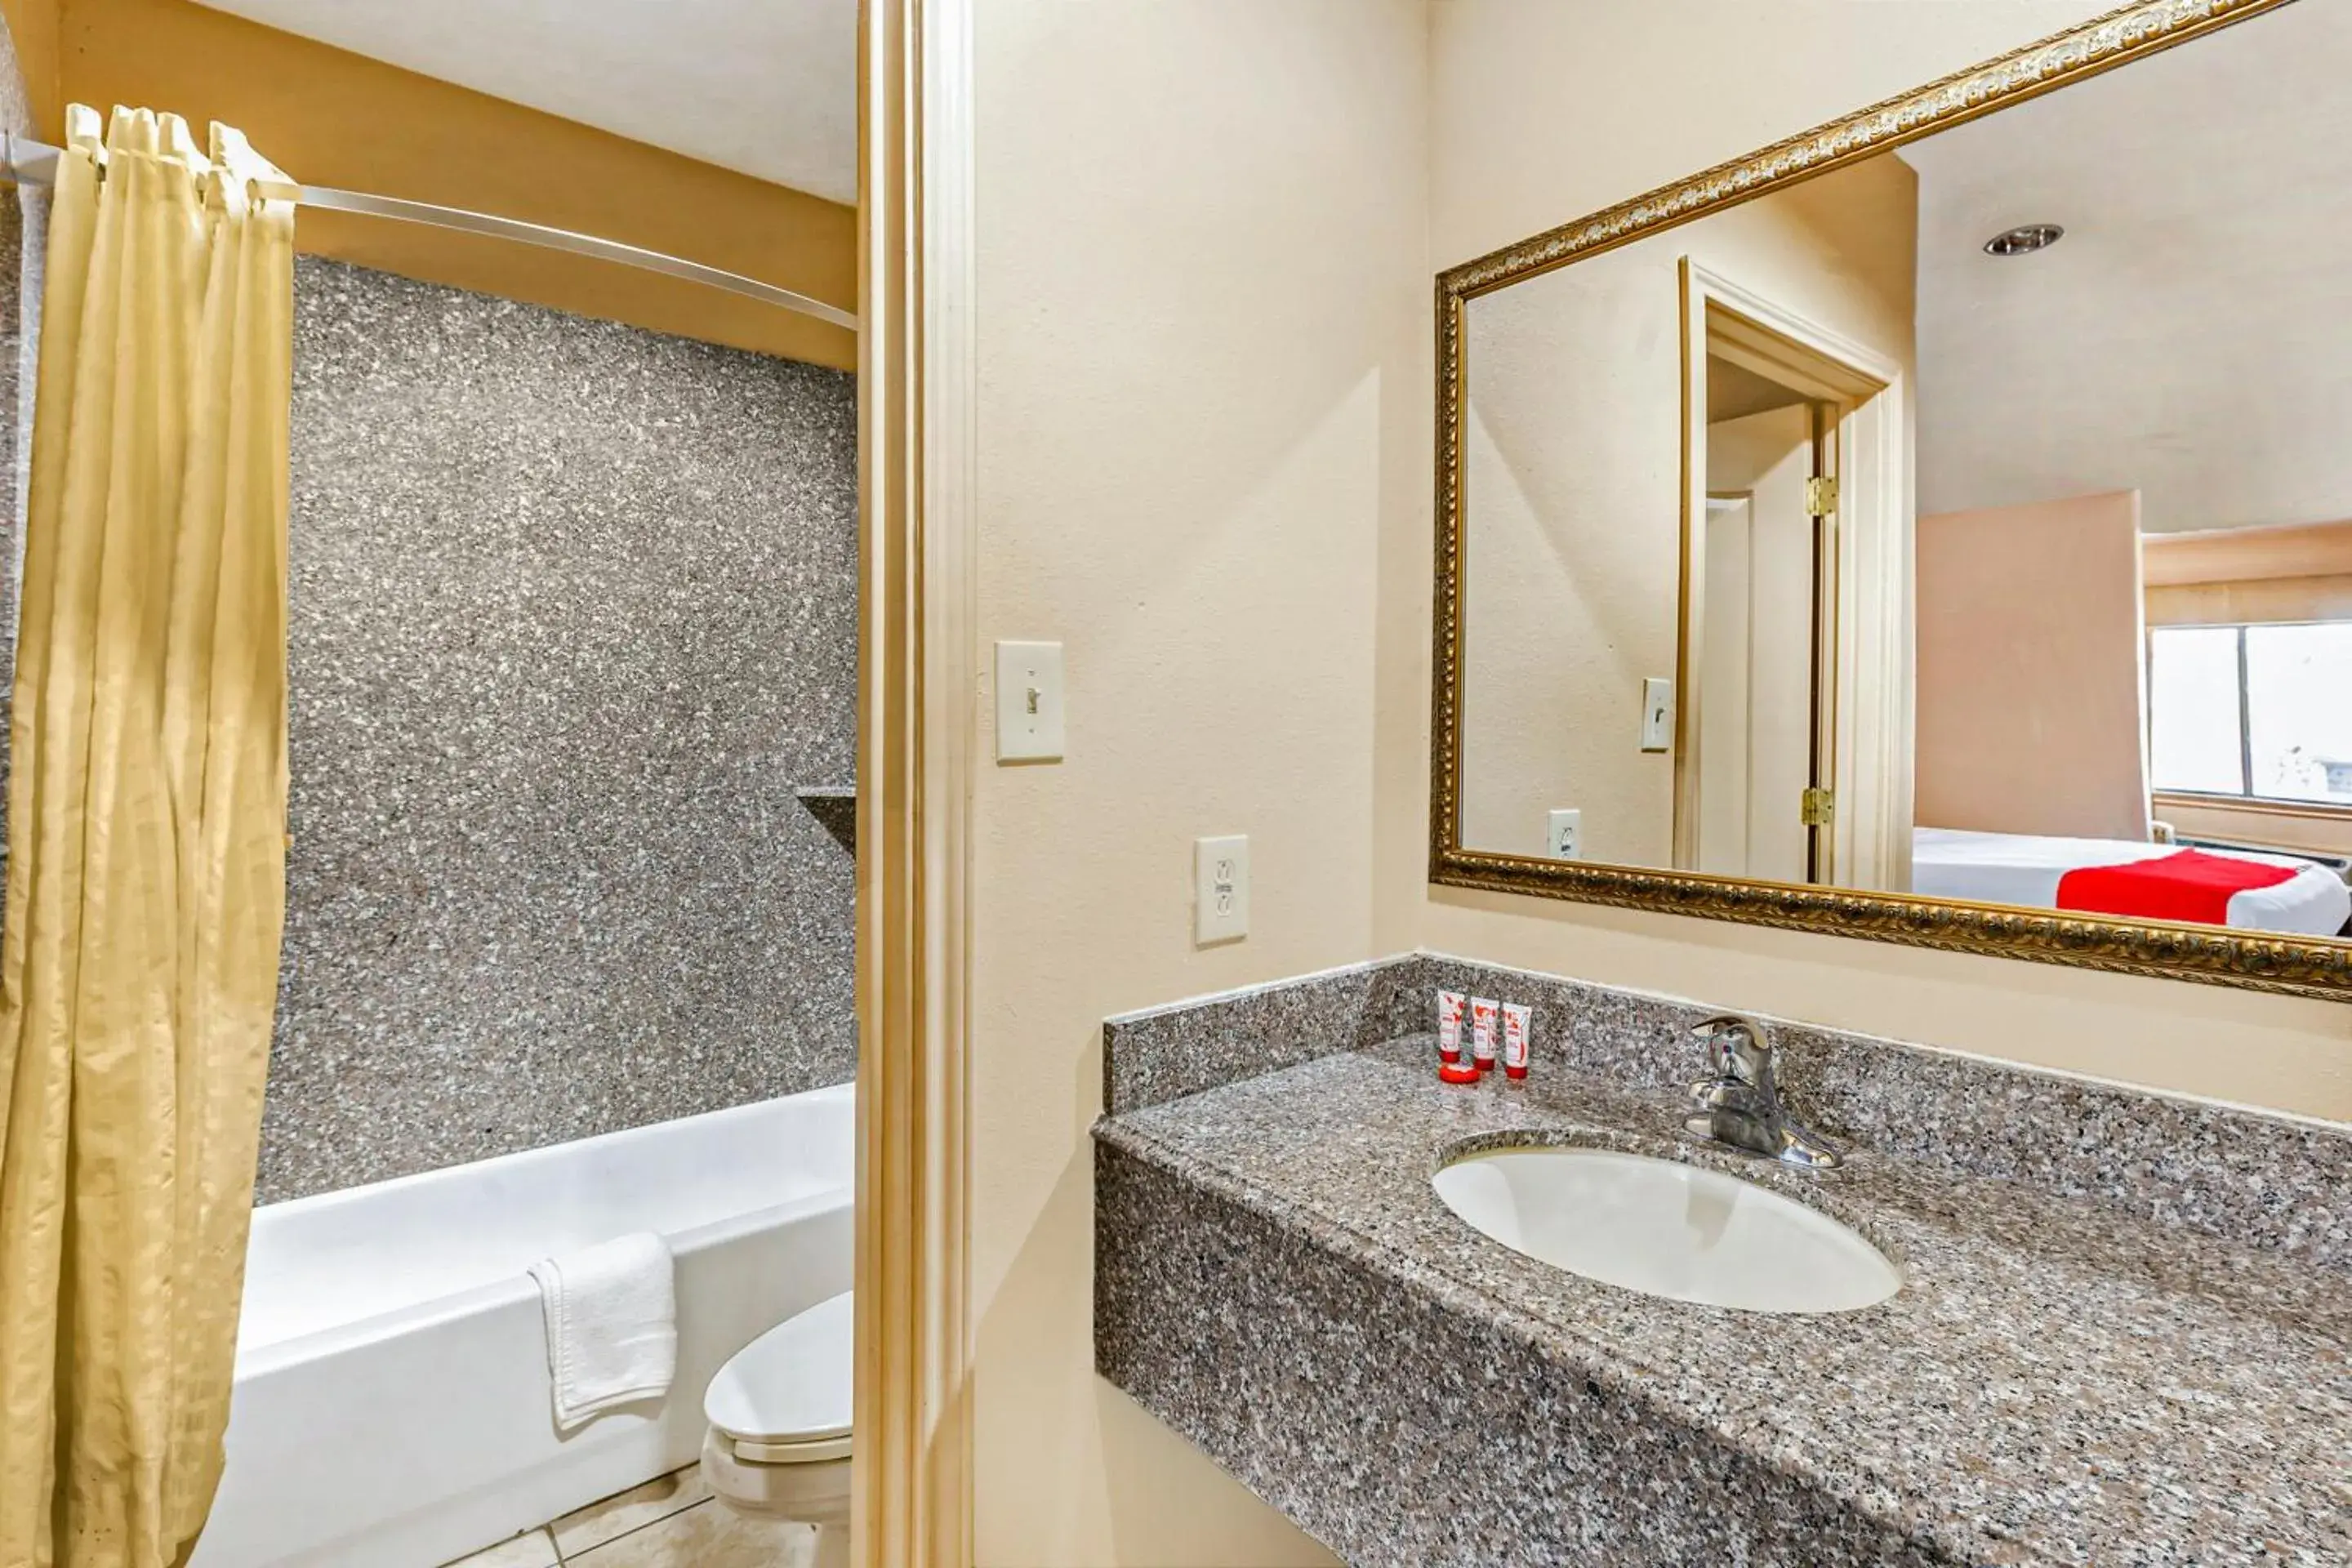 Bathroom in OYO Hotel Jewett TX Southwest, I-45